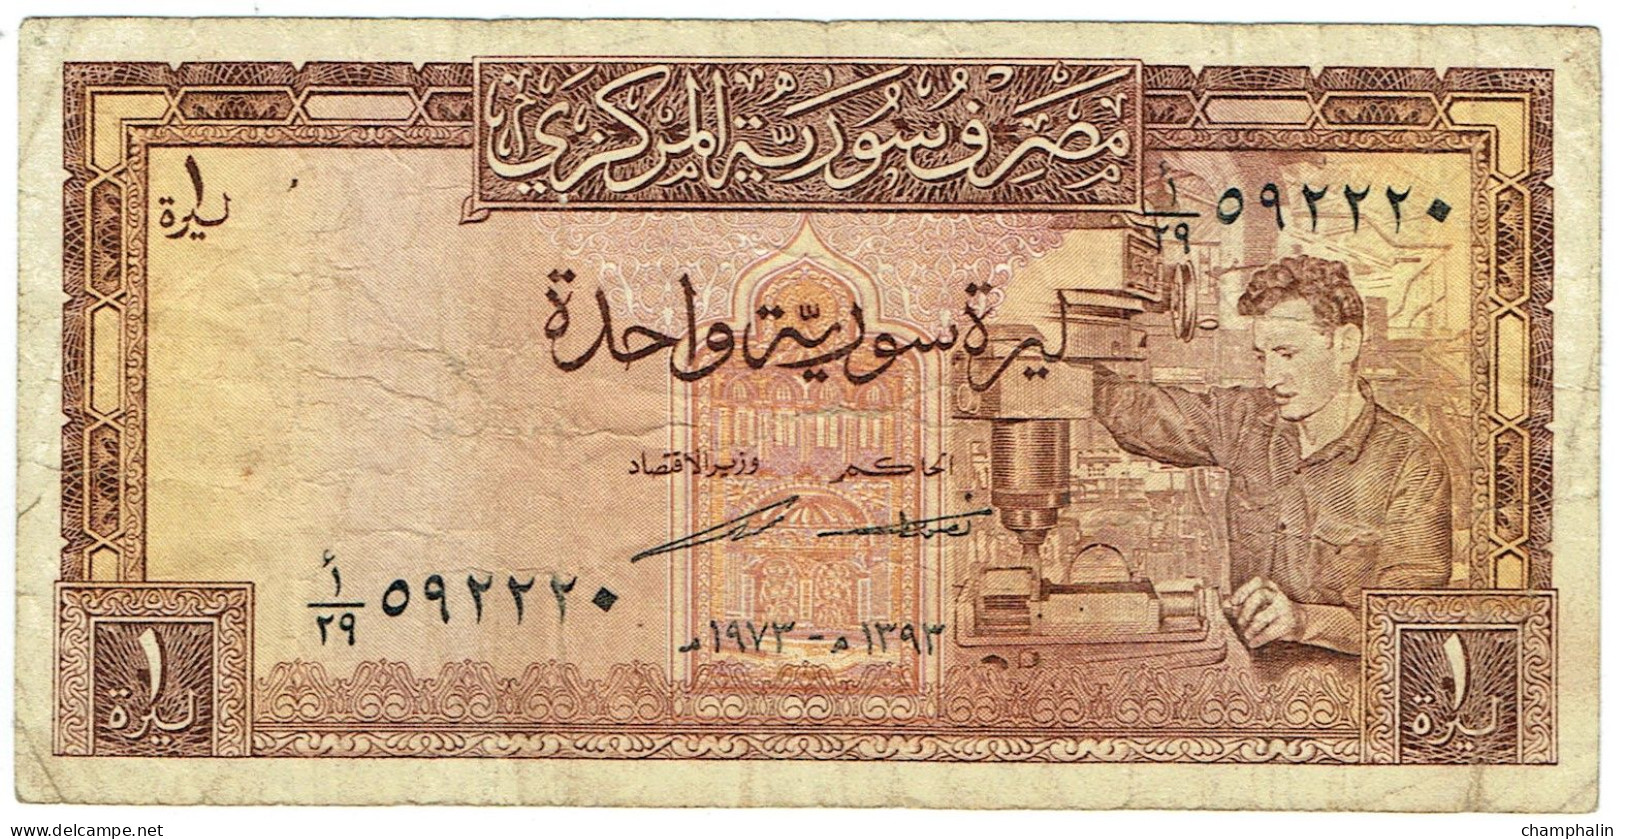 Syrie - Billet De 1 Pound - 1973 - P93c - Syrië